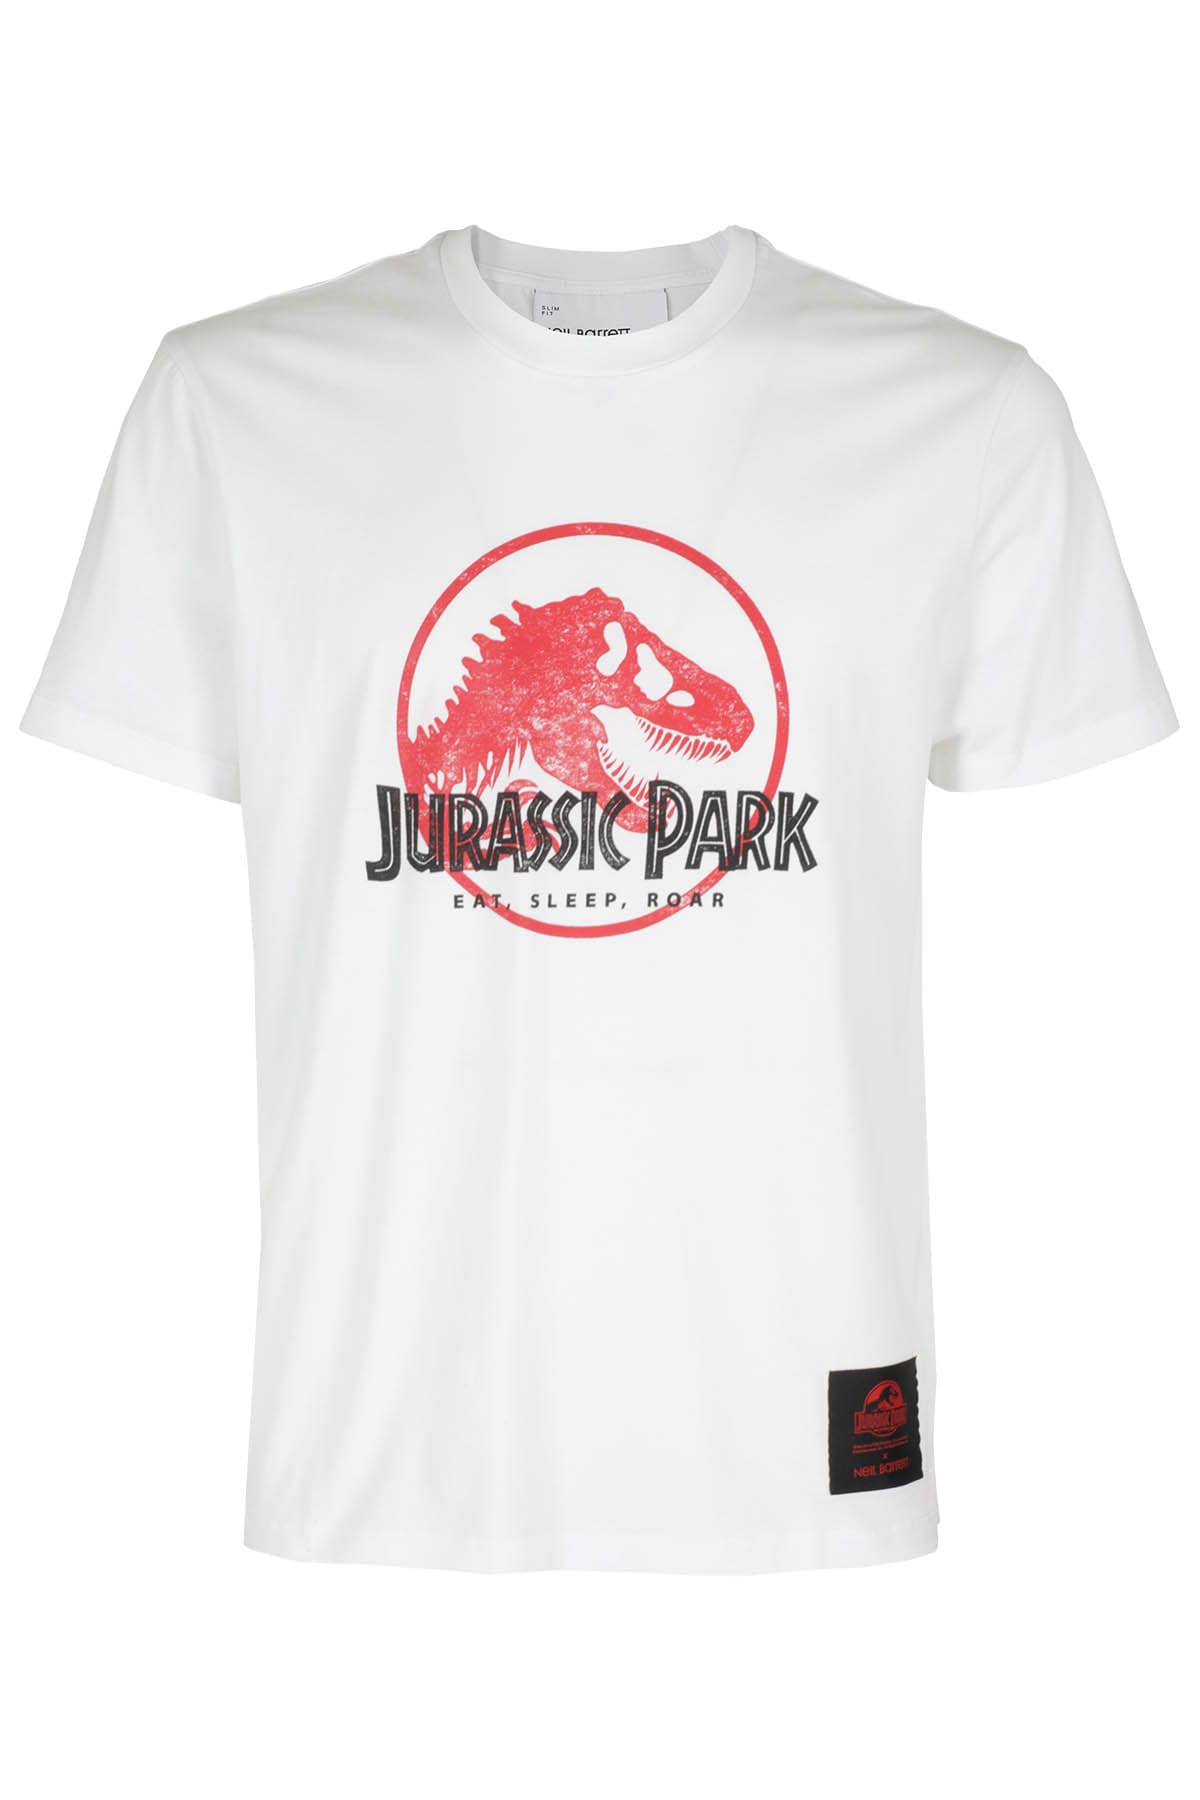 Jurassic Park Tshirt